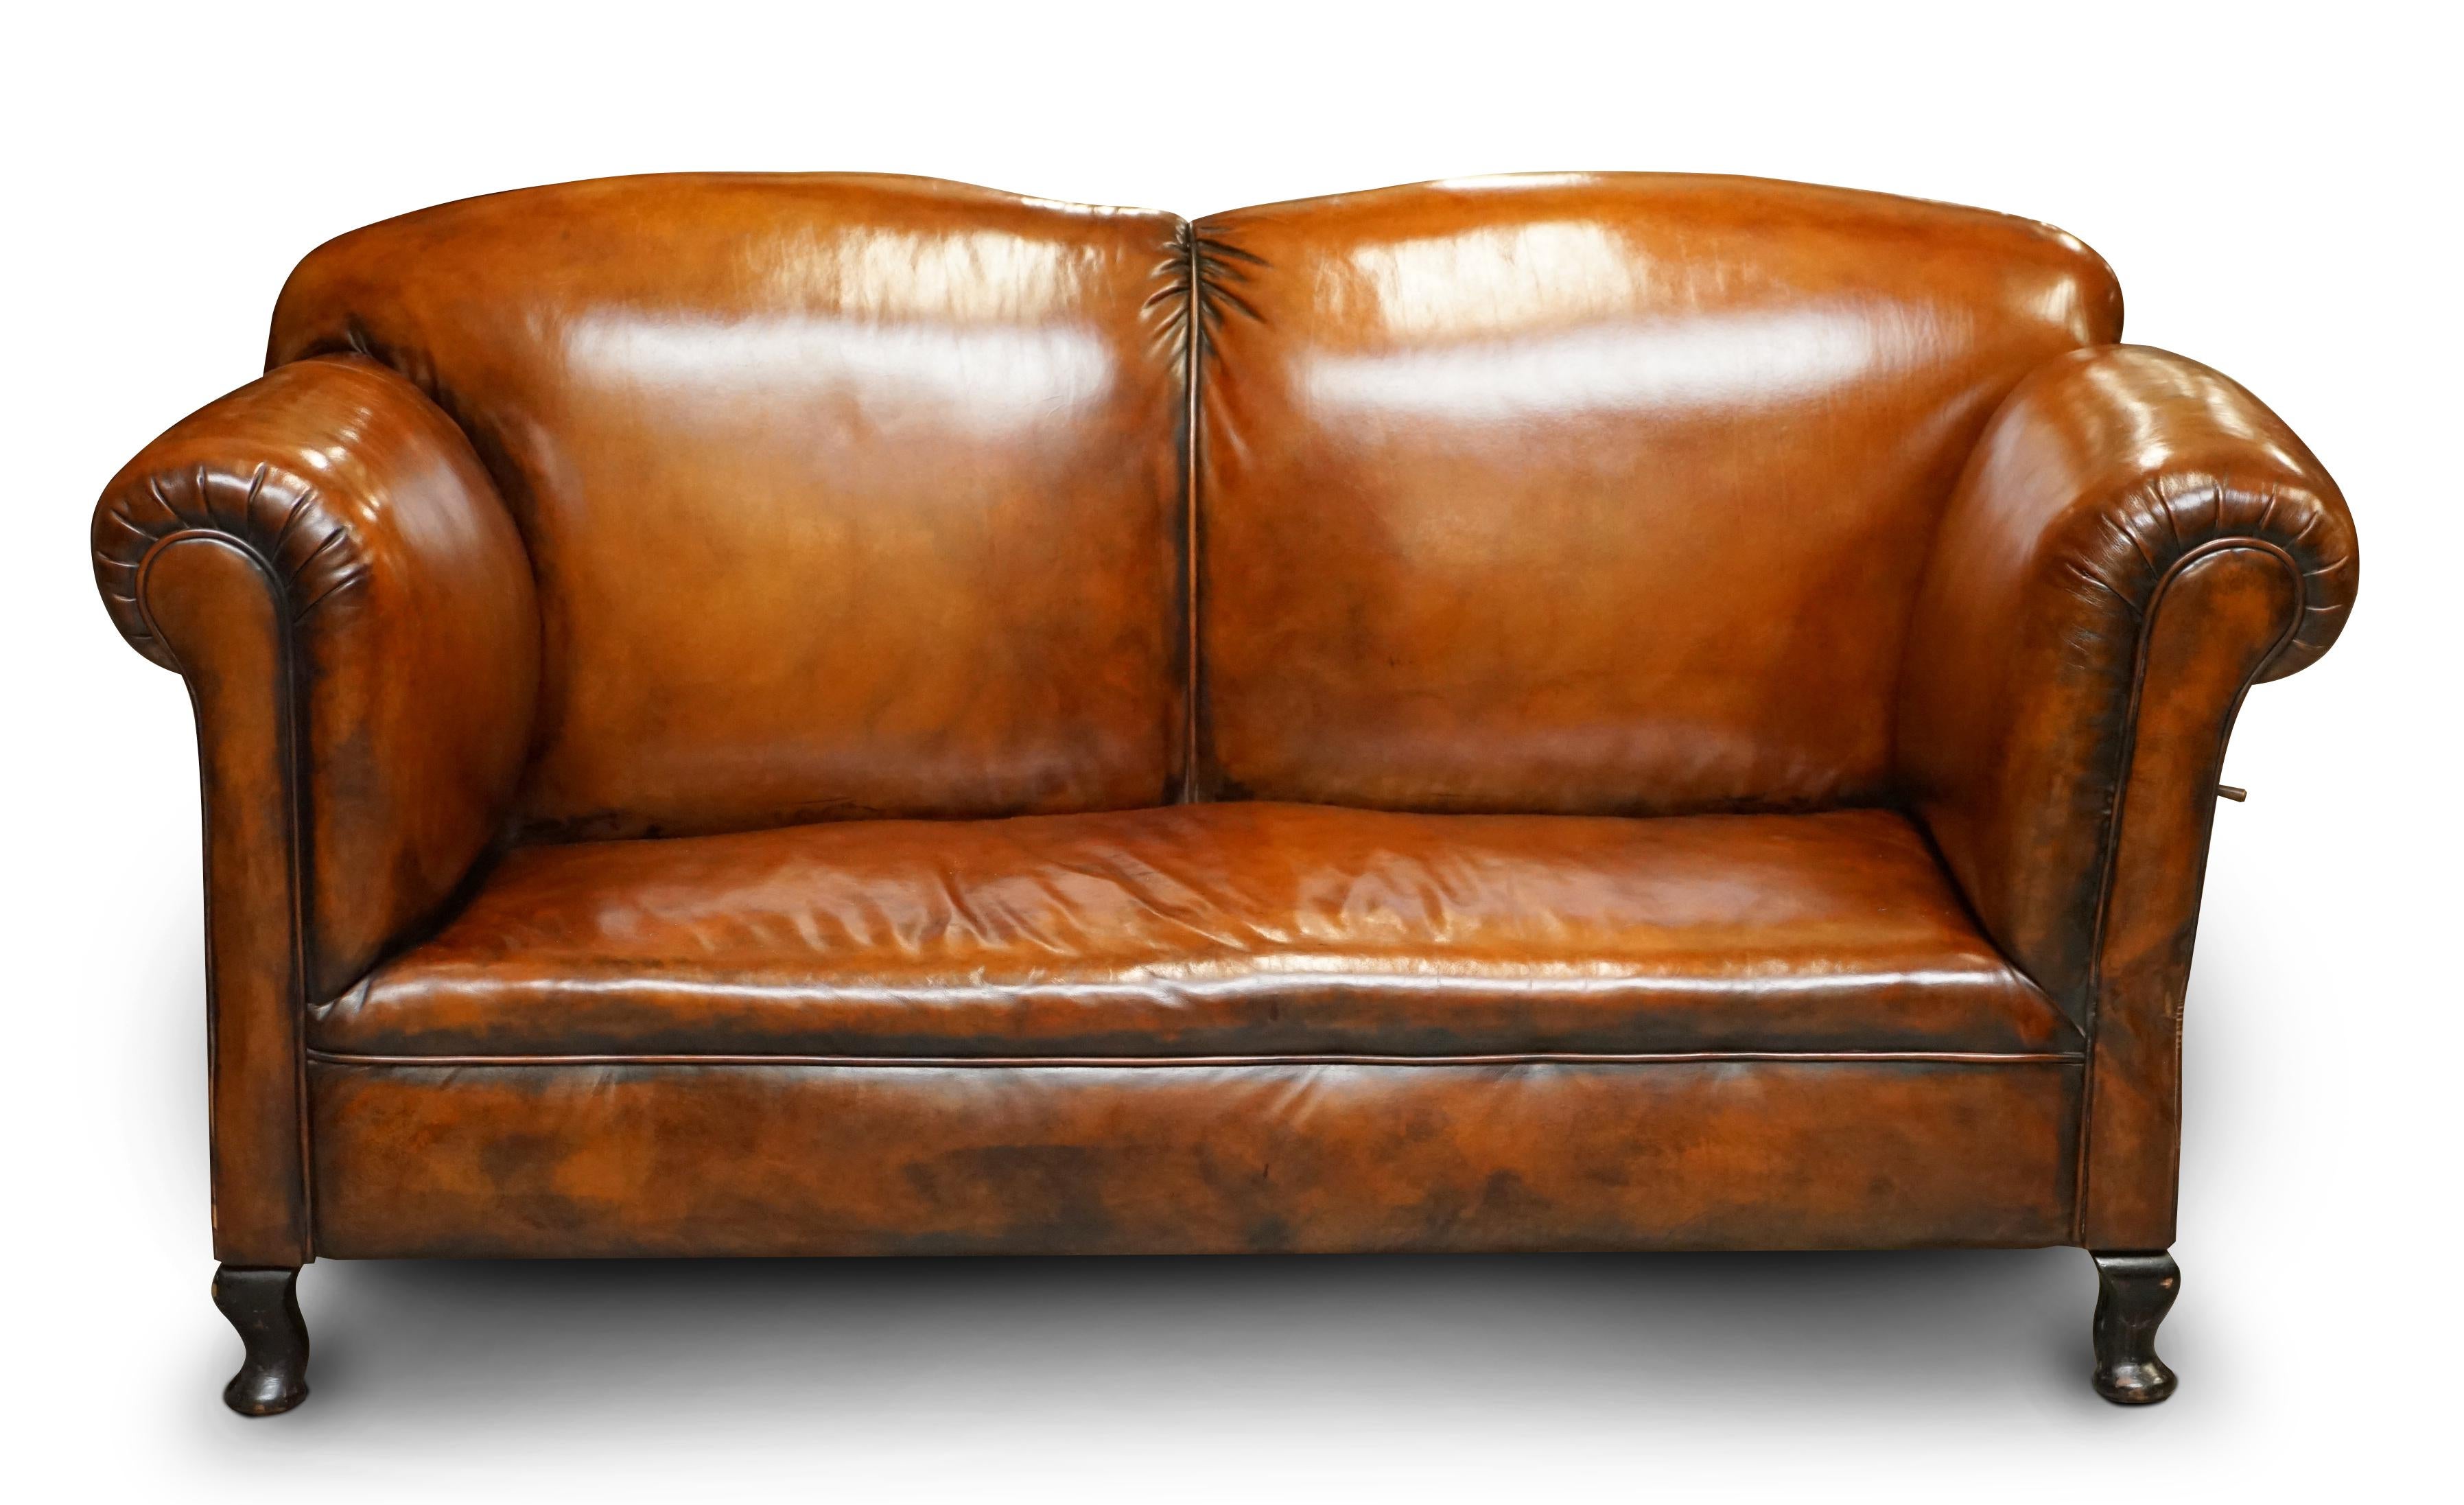 Wir freuen uns, dieses atemberaubende, vollständig restaurierte viktorianische Sofa mit Chaiselongue in handgefärbtem Whiskybraunem Leder zum Verkauf anzubieten

Ein sehr gut aussehendes, gut verarbeitetes und bequemes Chaiselongue-Sofa. Die